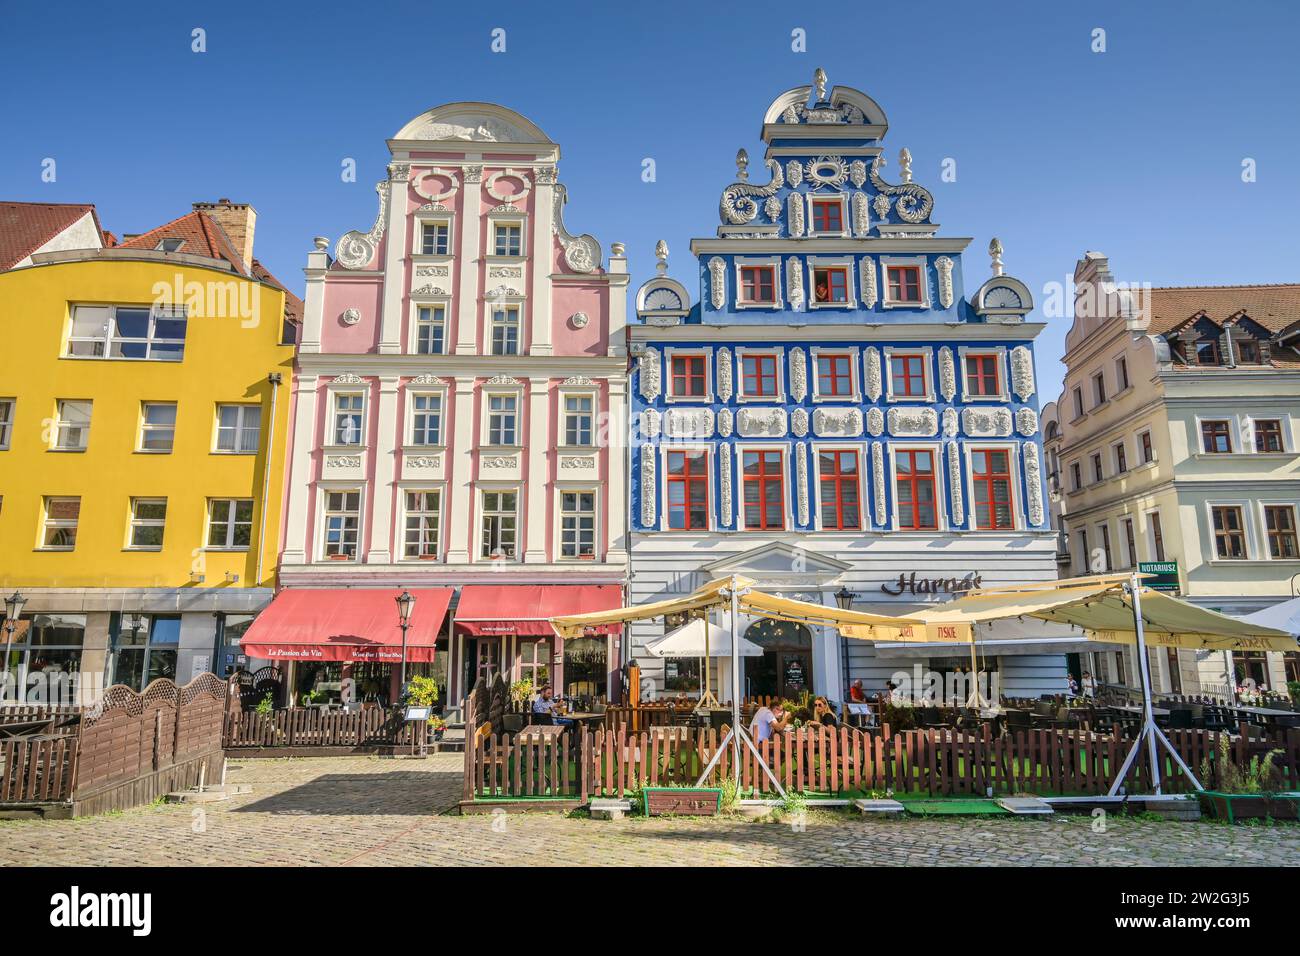 Mevius-Haus und Linsing-Haus, Altbauten am Heumarkt- Rynek Sienny, Altstadt, Stettin, Woiwodschaft Westpommern, Polen Stock Photo